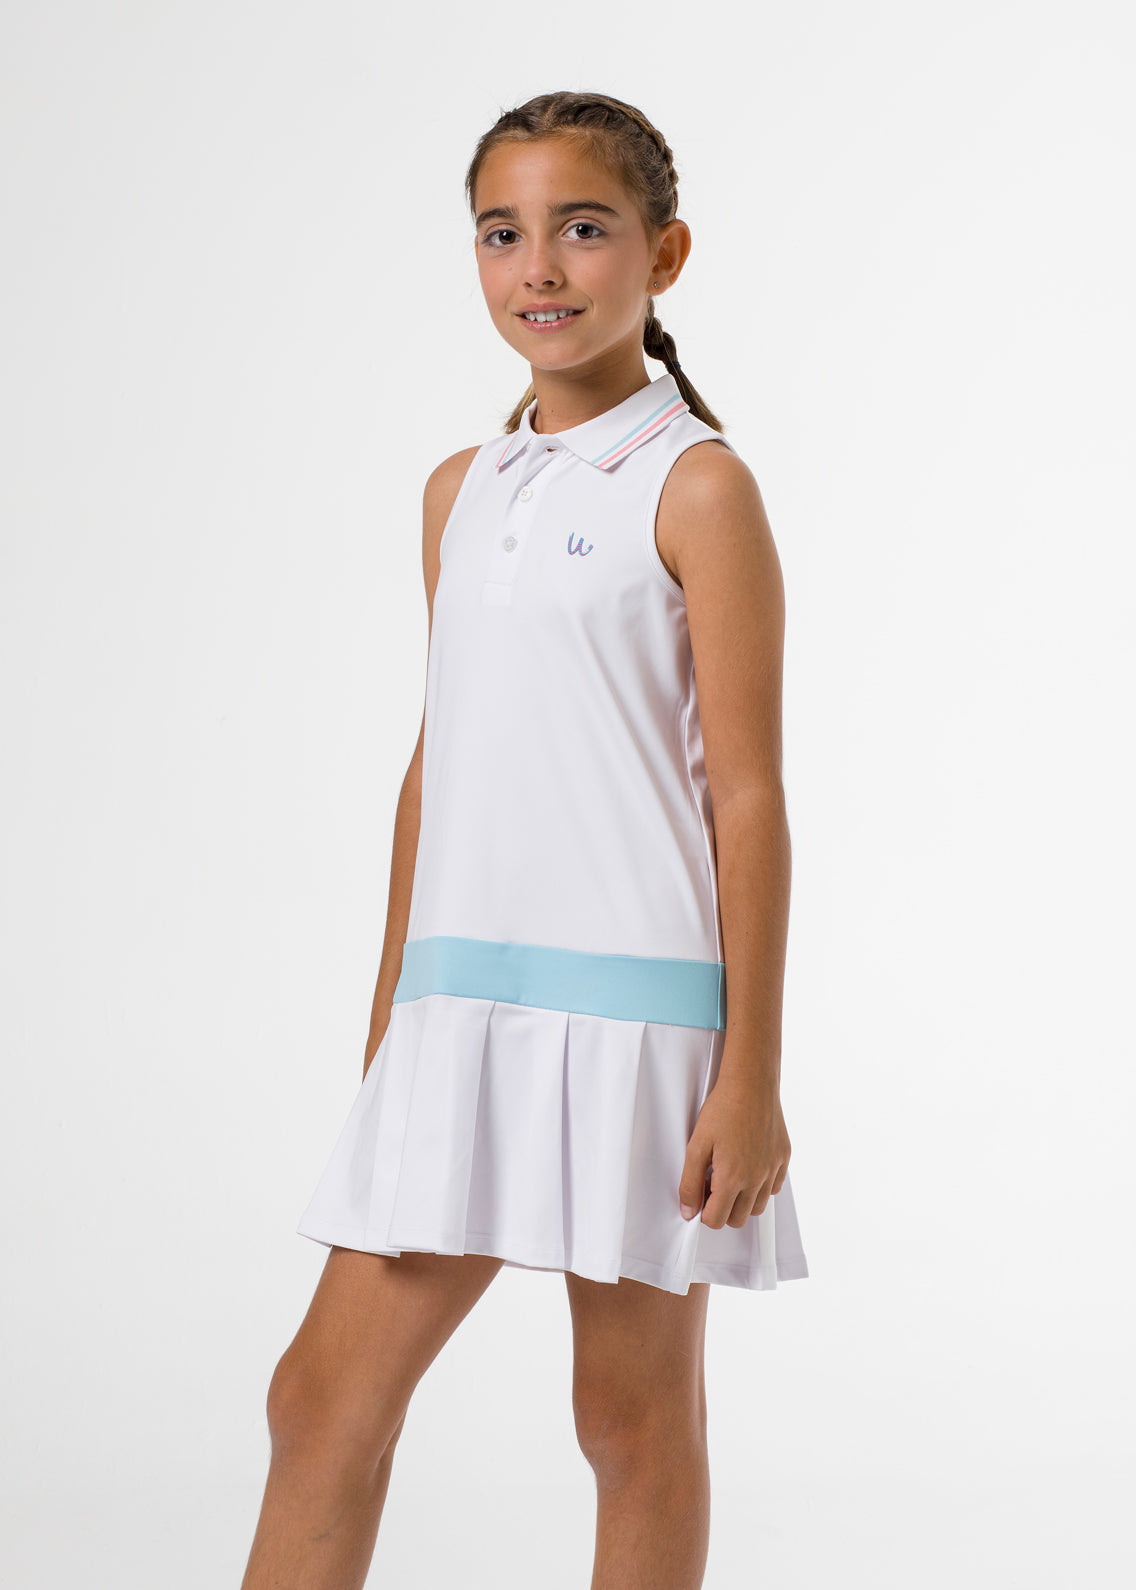 White sleeveless golf dress for girls